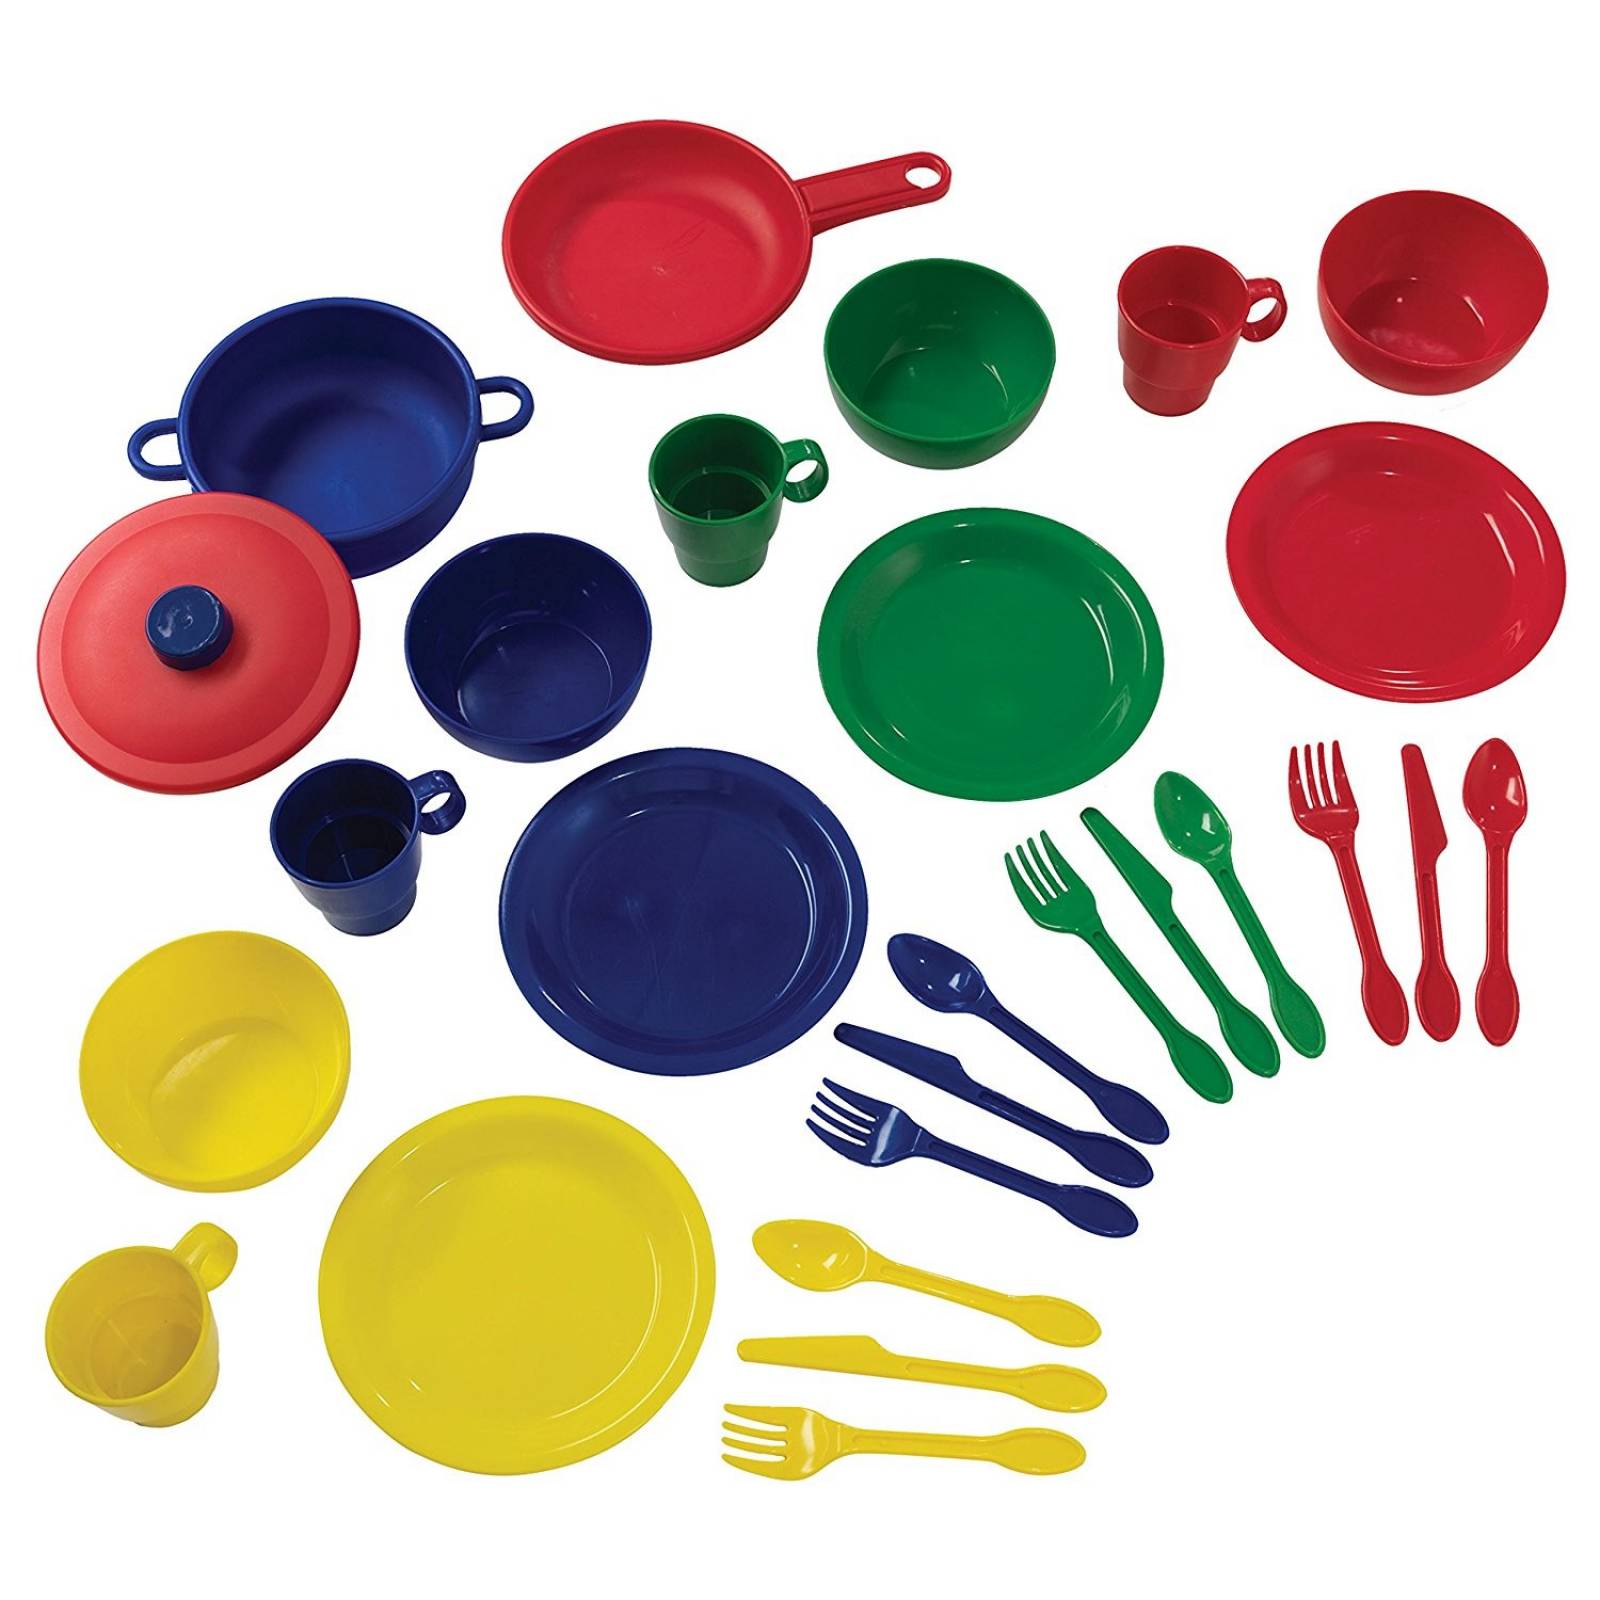 Juego de Cocina KidKraft Set con 27 piezas Plástico -Colores